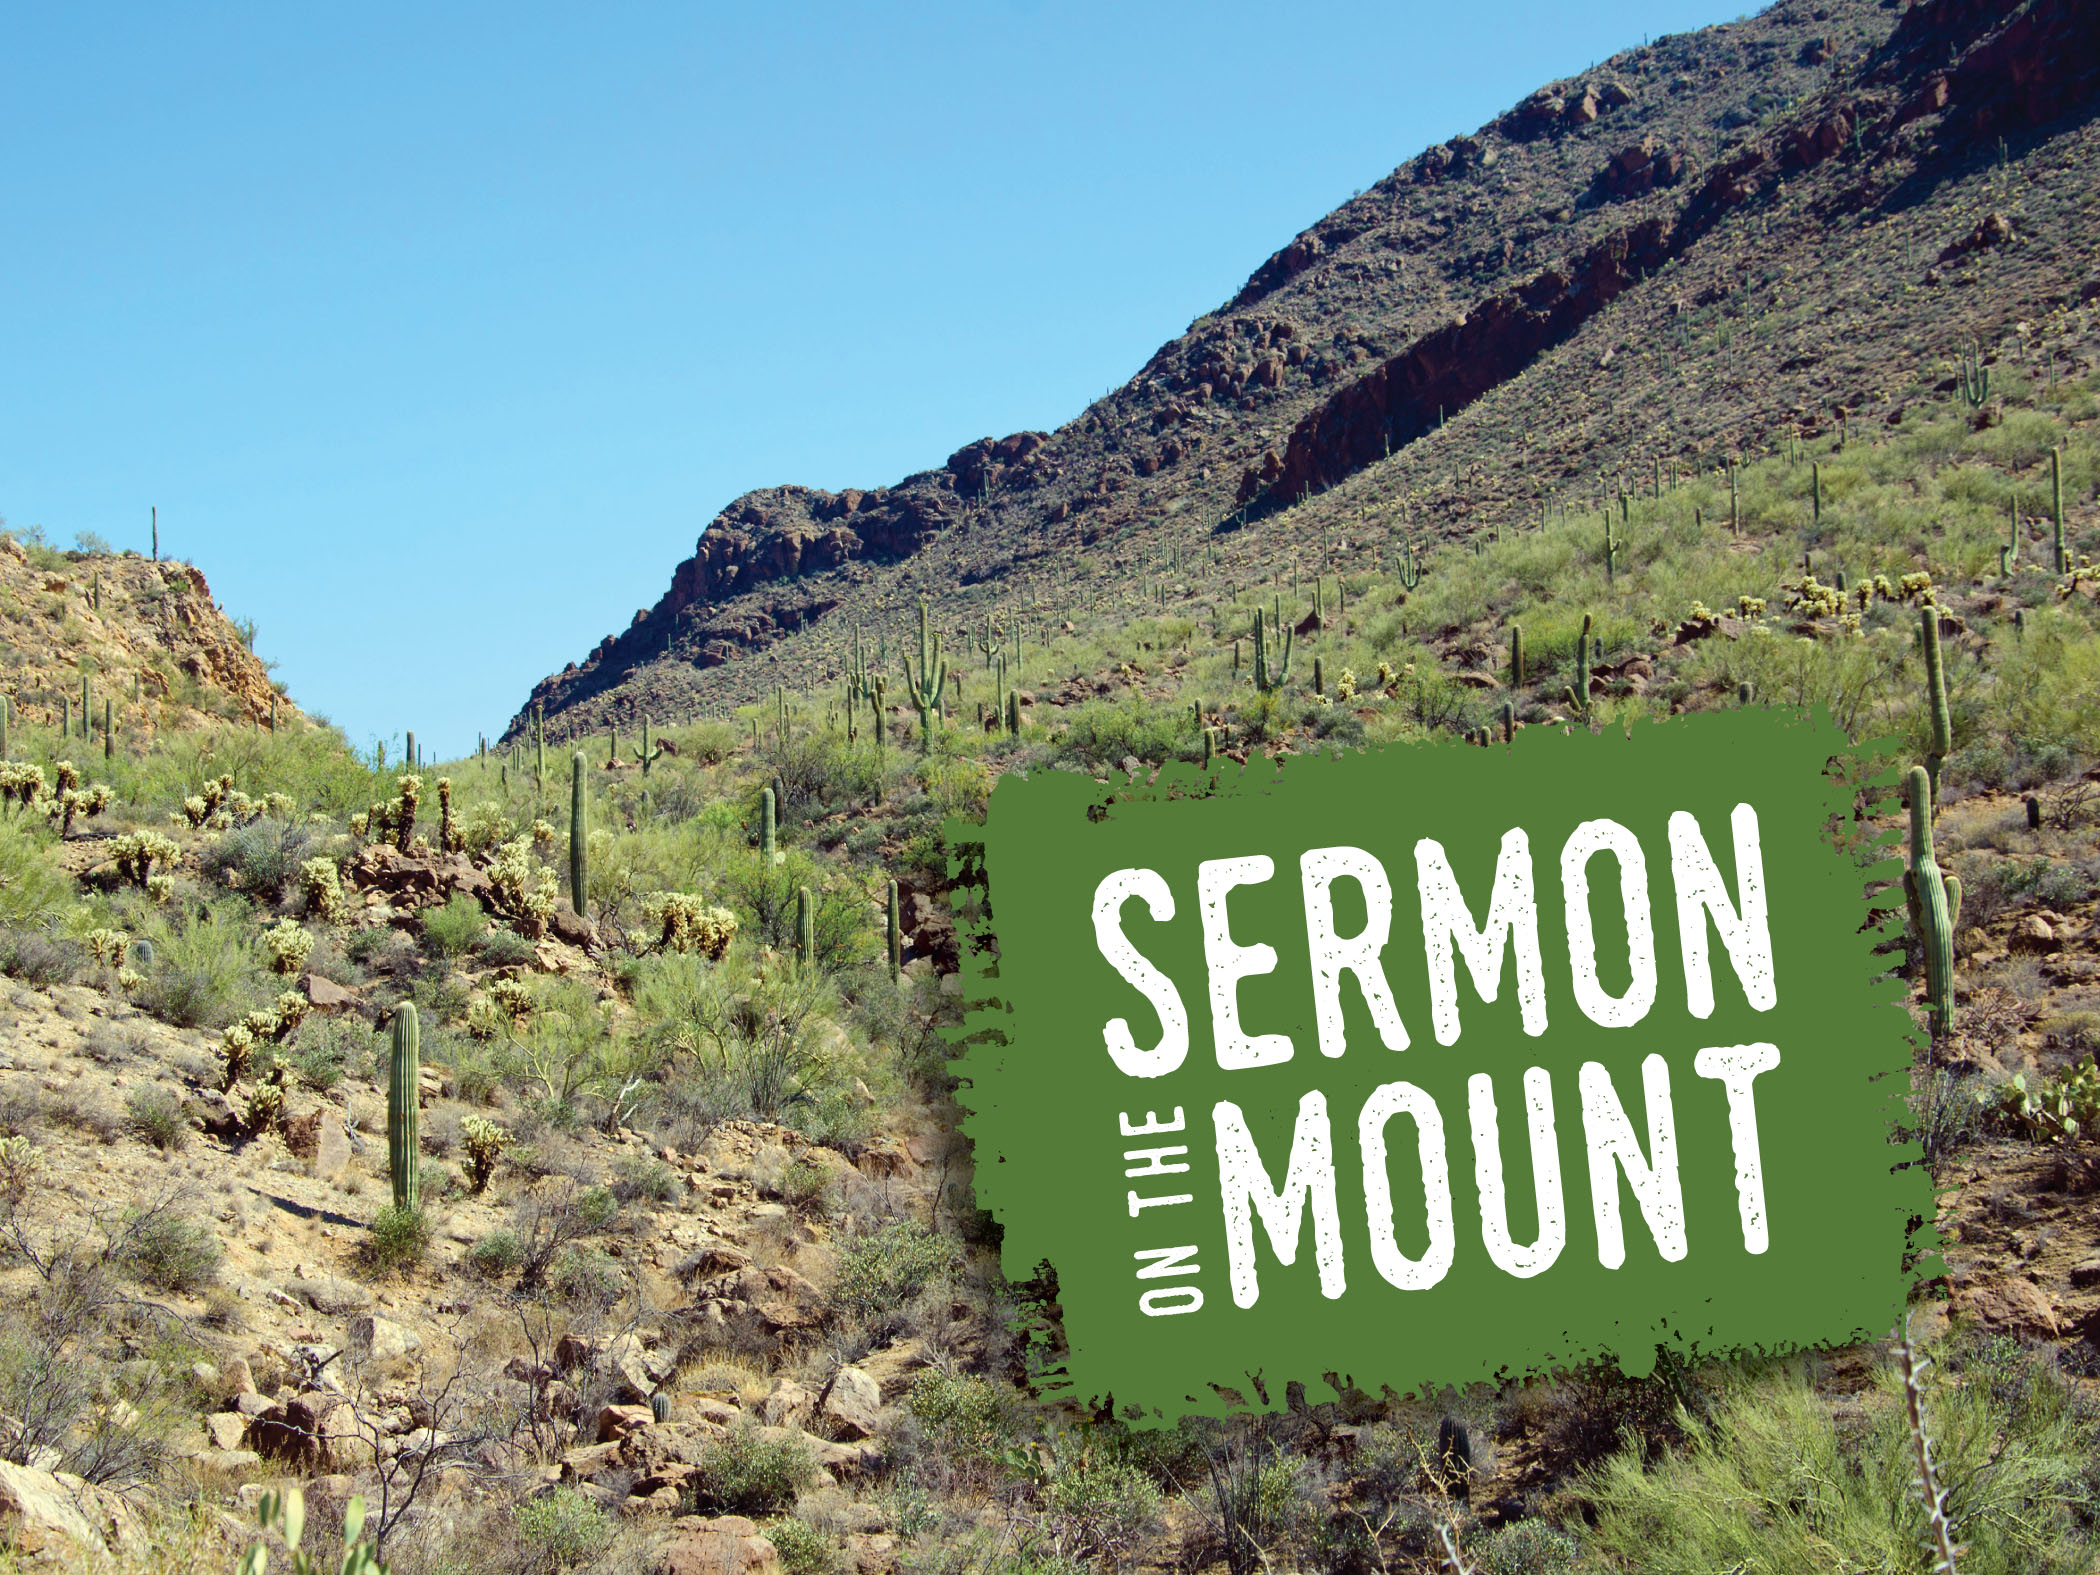 Sermon on the mount 2 (002)